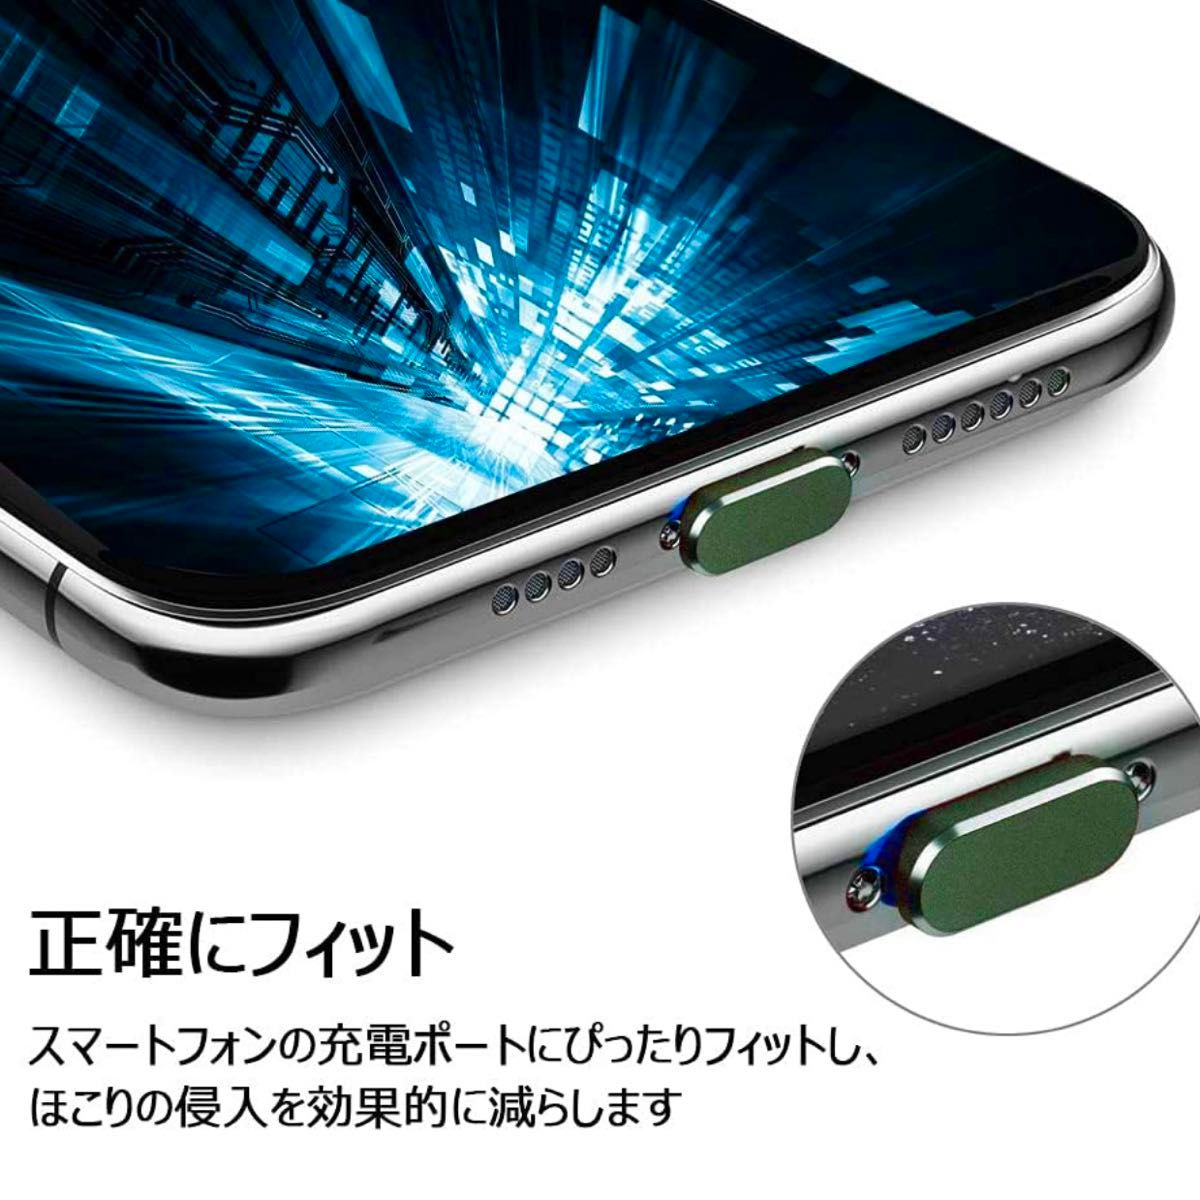 【新品・未使用】iPhone iPad ライトニングキャップ 充電口 保護キャップ グリーン